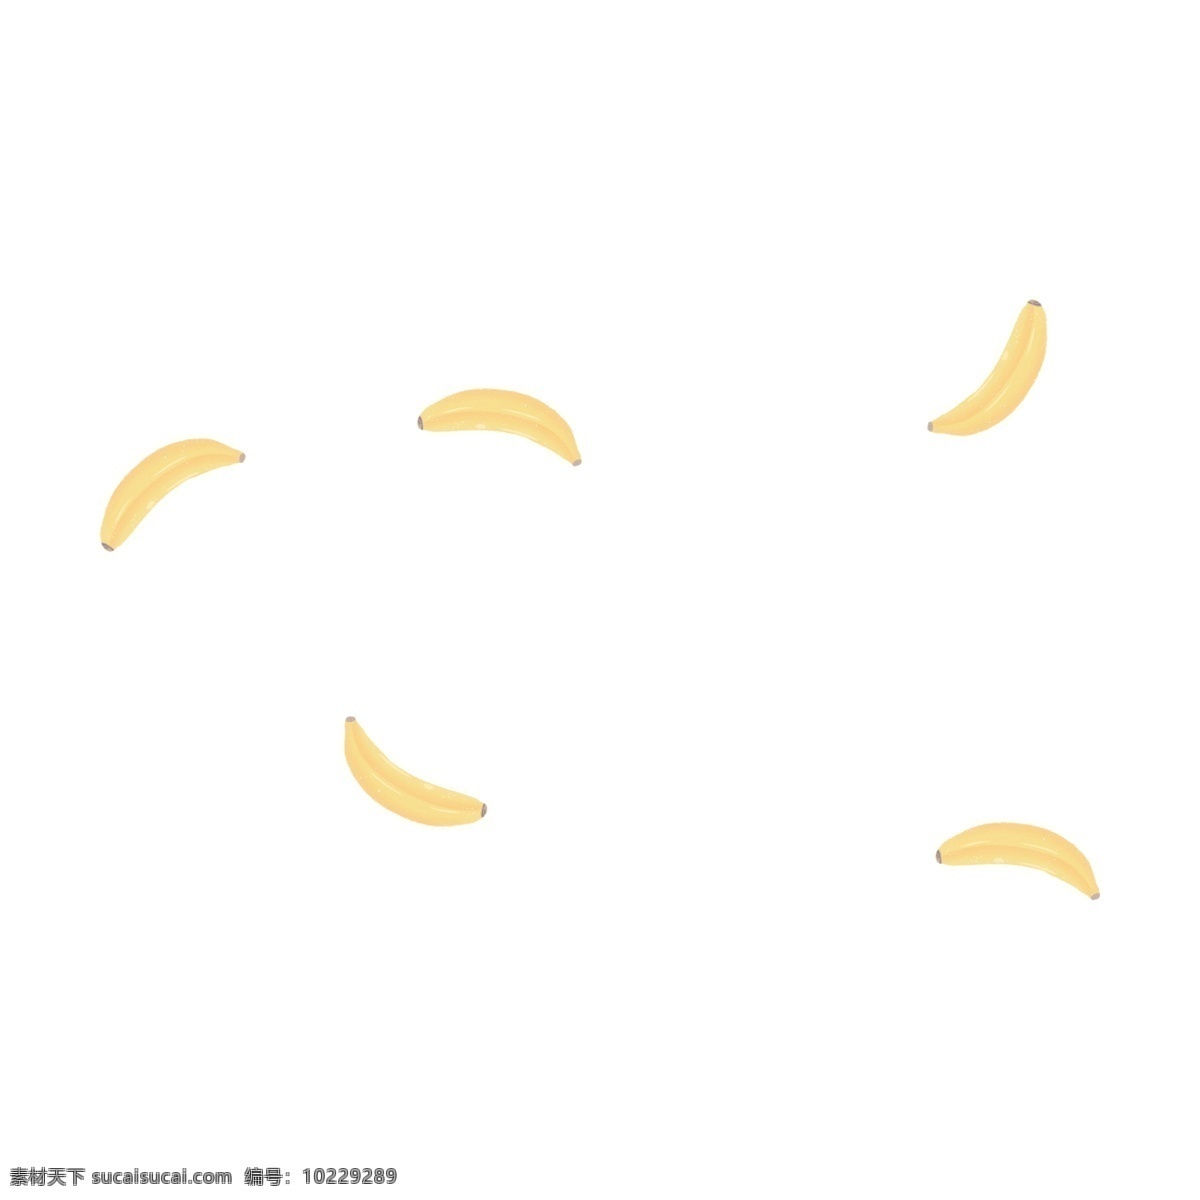 五 根 插画 漂浮 香蕉 五根香蕉 黄色 水果 香蕉装饰 美味 食物 漂浮香蕉 插画香蕉 手绘香蕉 植物 黄色水果